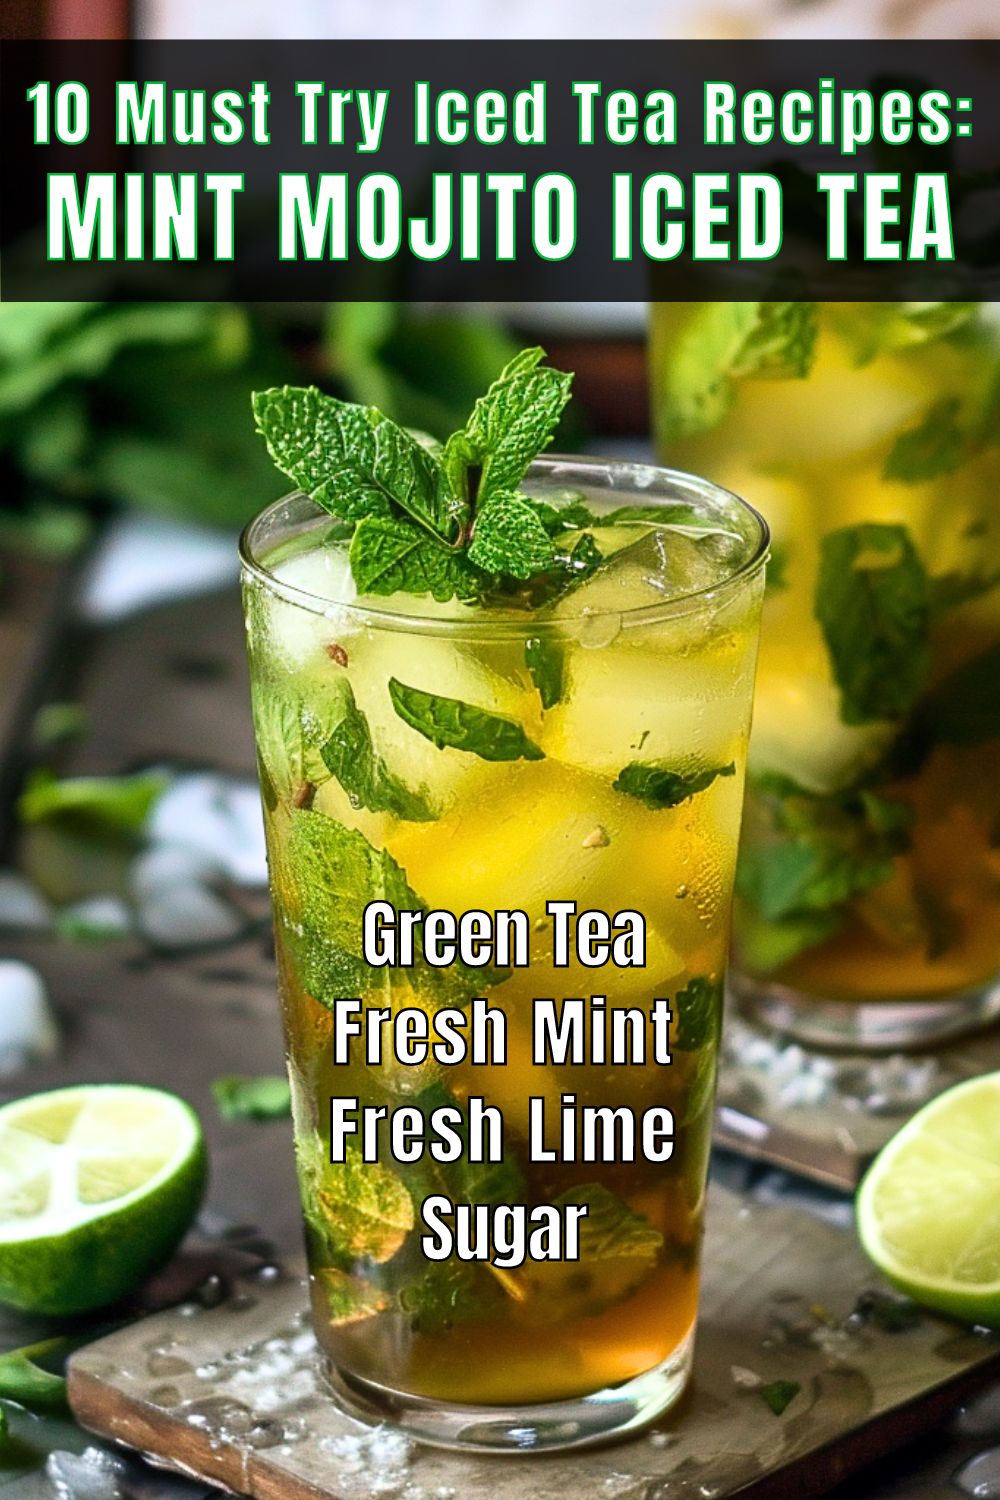 Iced Tea Recipes Mint Mojito Iced Tea